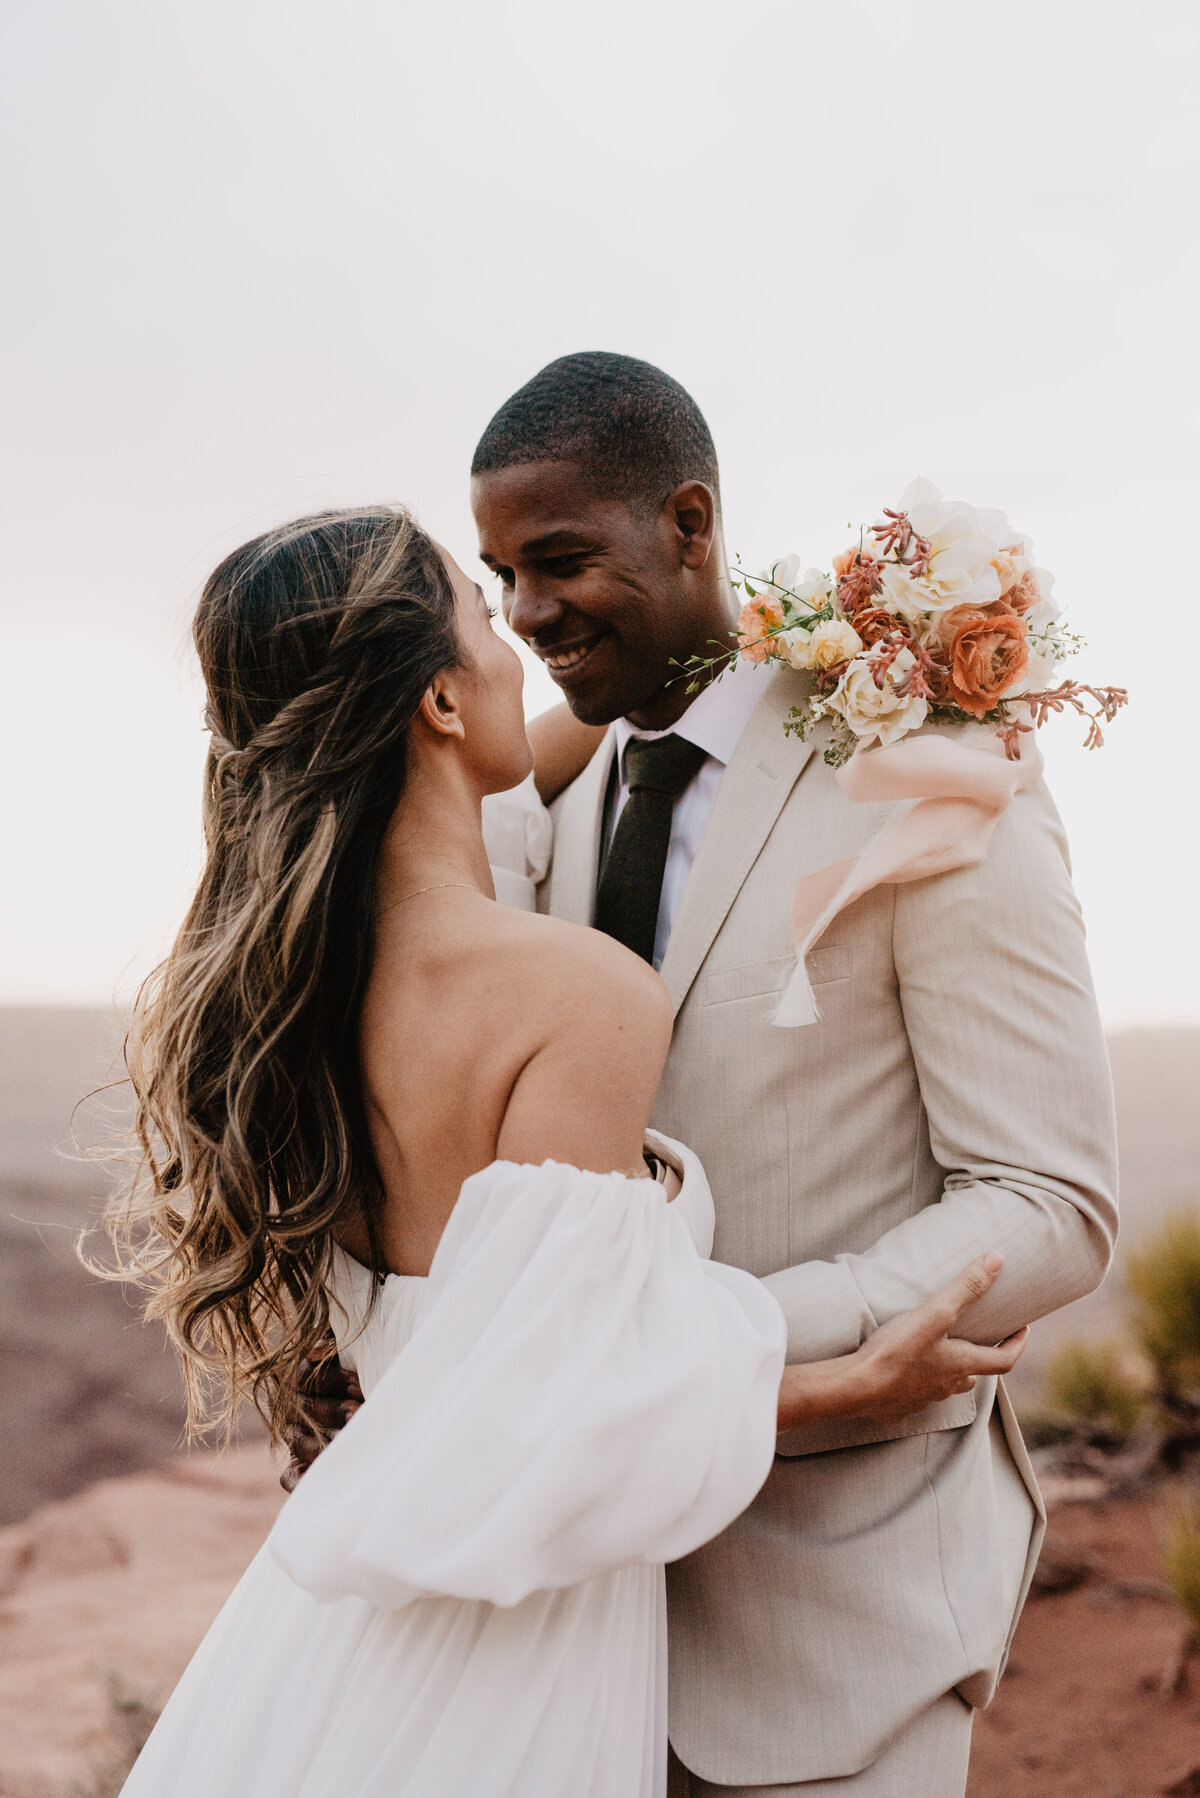 Utah Elopement Photographer captures wedding portraits